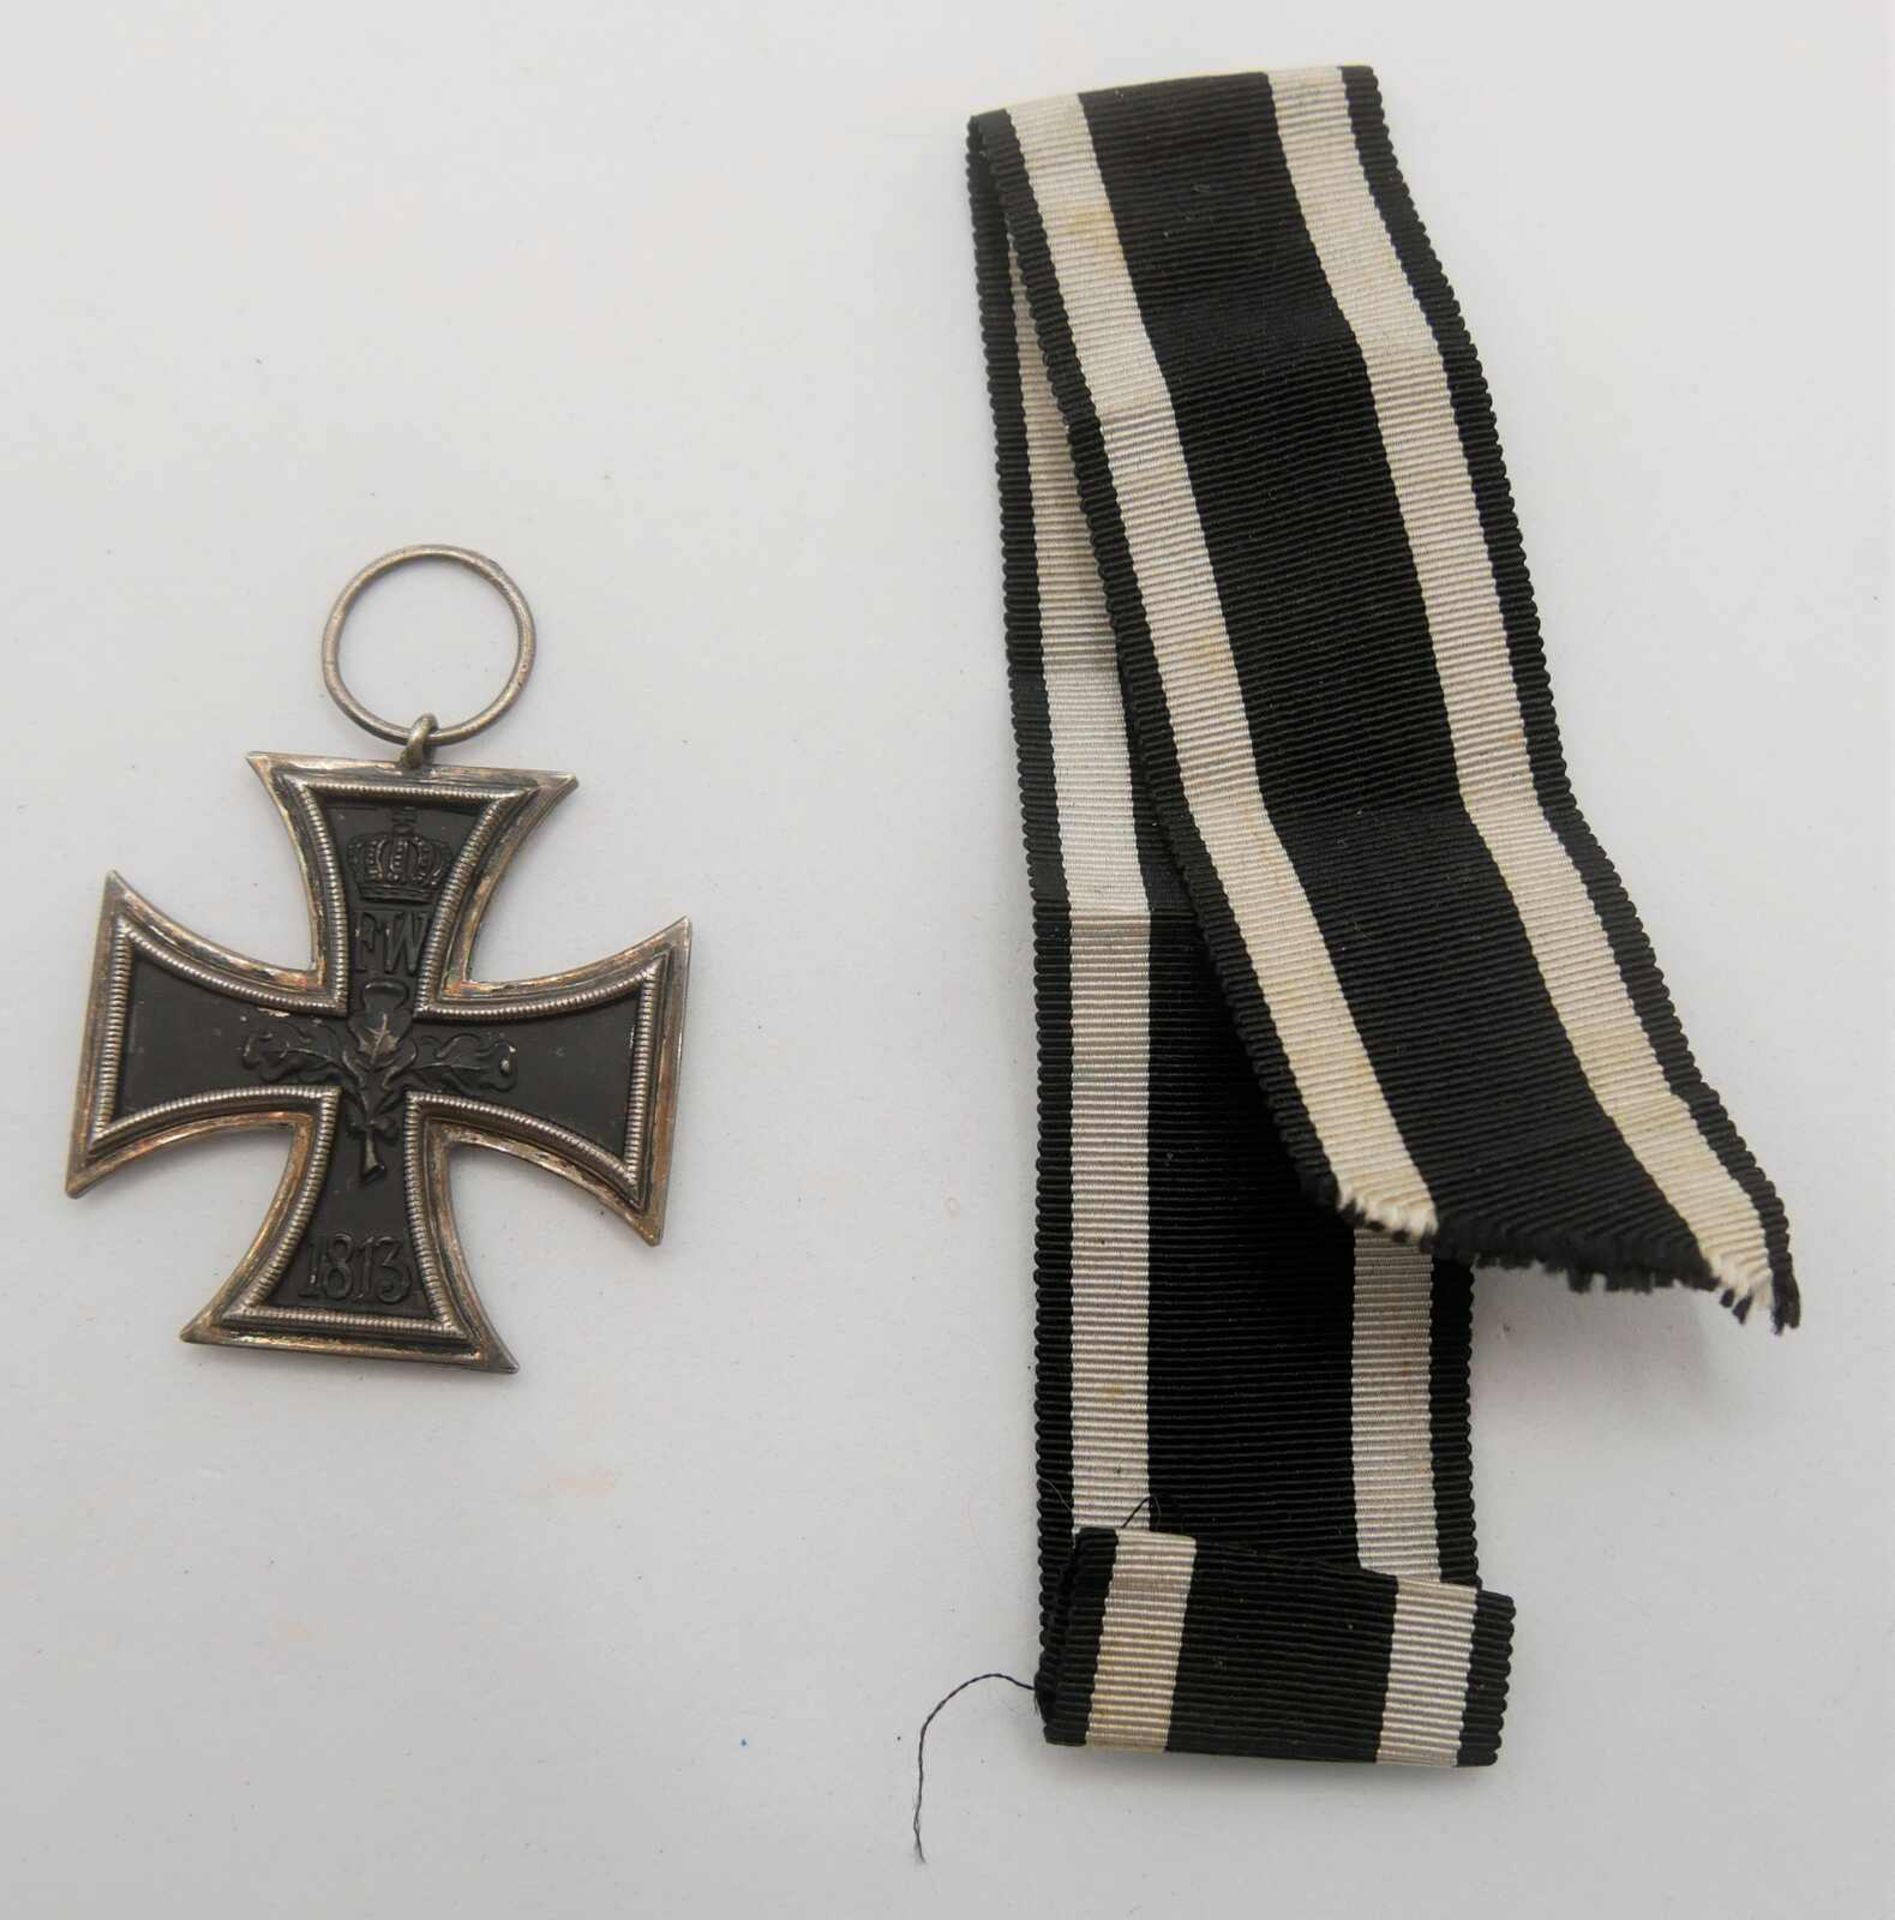 1. WK, Eisernes Kreuz II, mit Band. Getragener Zustand mit Bandraing. Herstellerzeichen angedeutet.